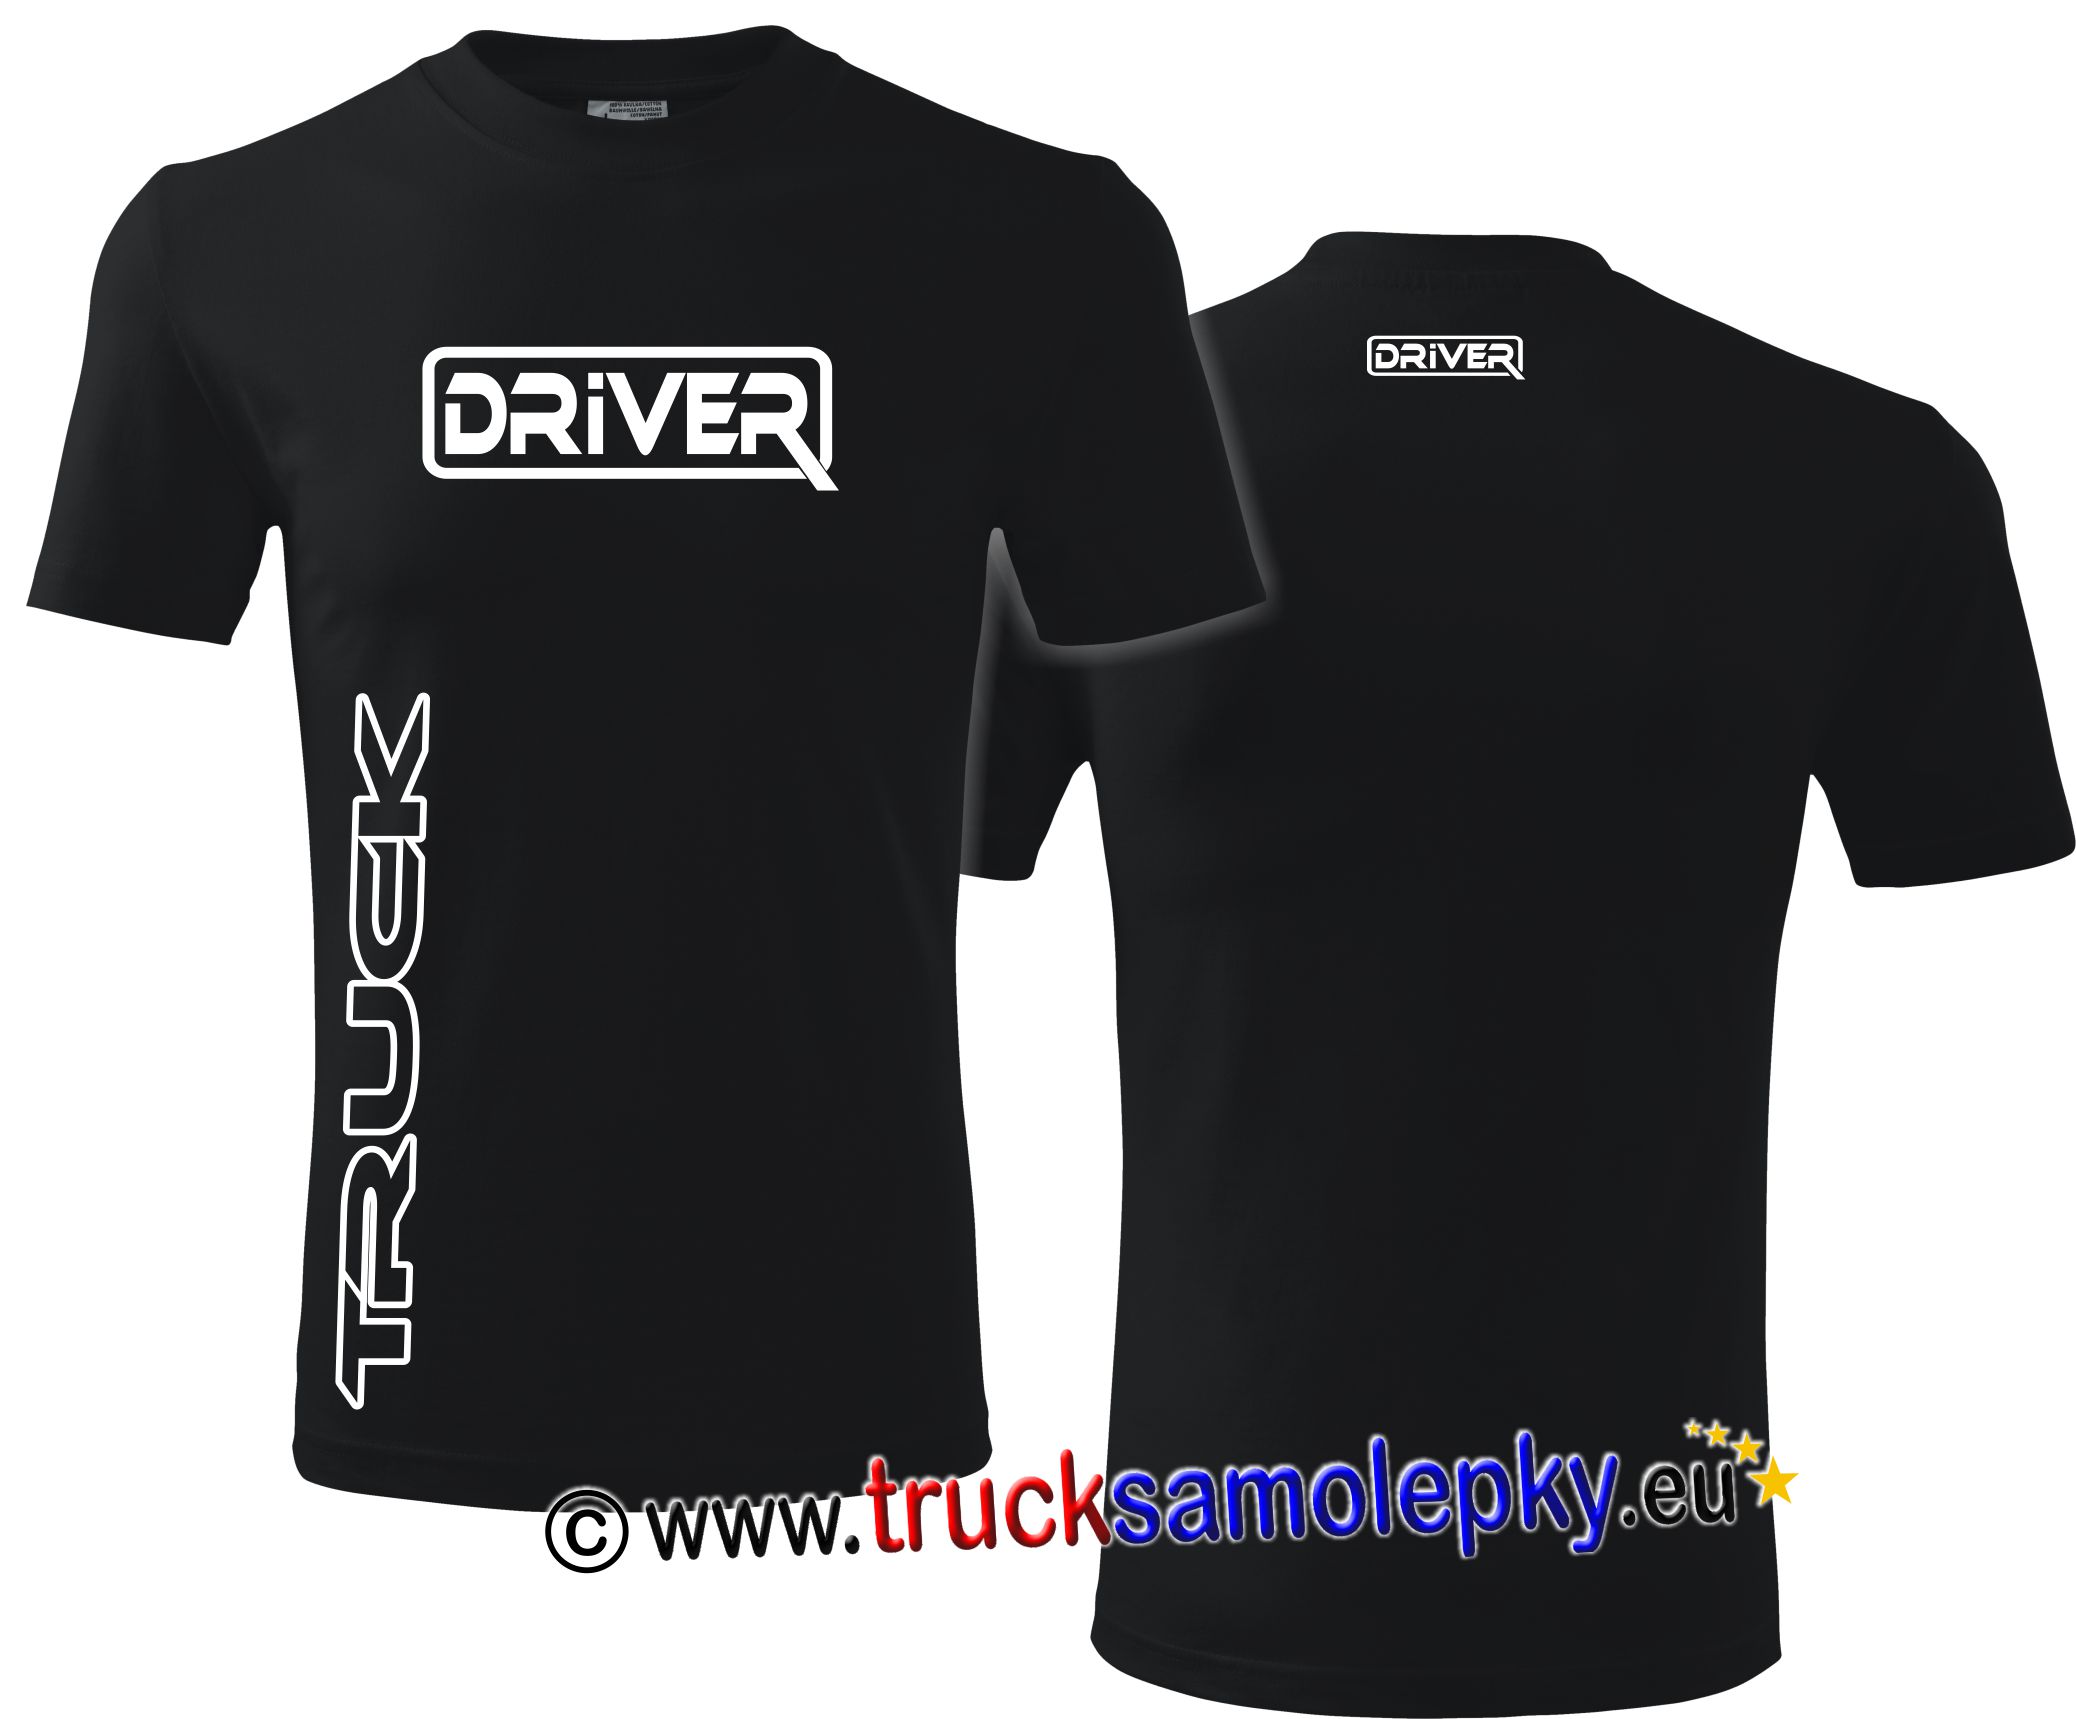 Tričko TRUCK DRIVER v barvě černé